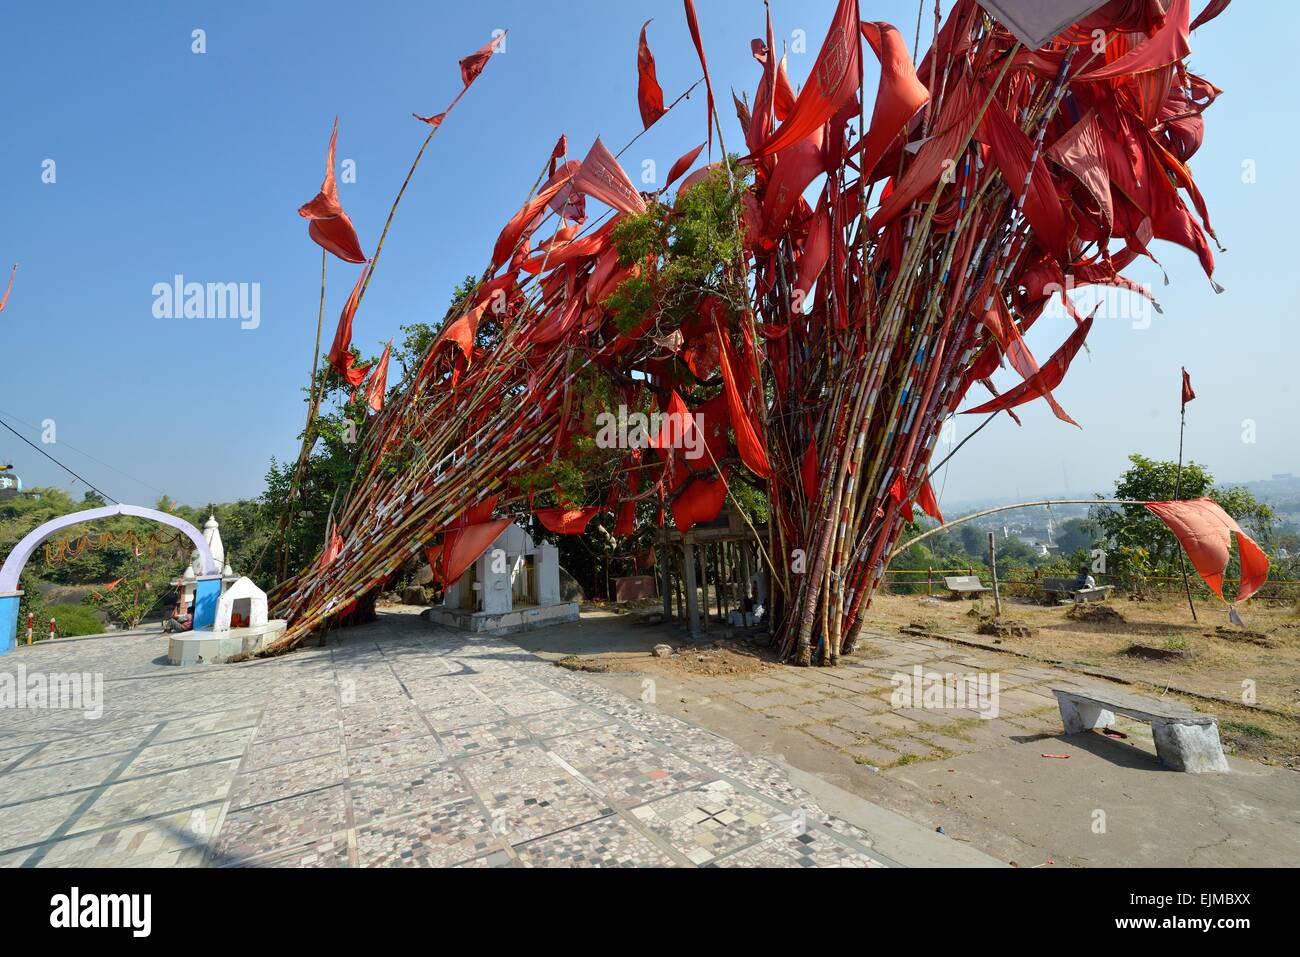 Banderas rojas en el templo de Hanuman en Jabalpur, India Foto de stock